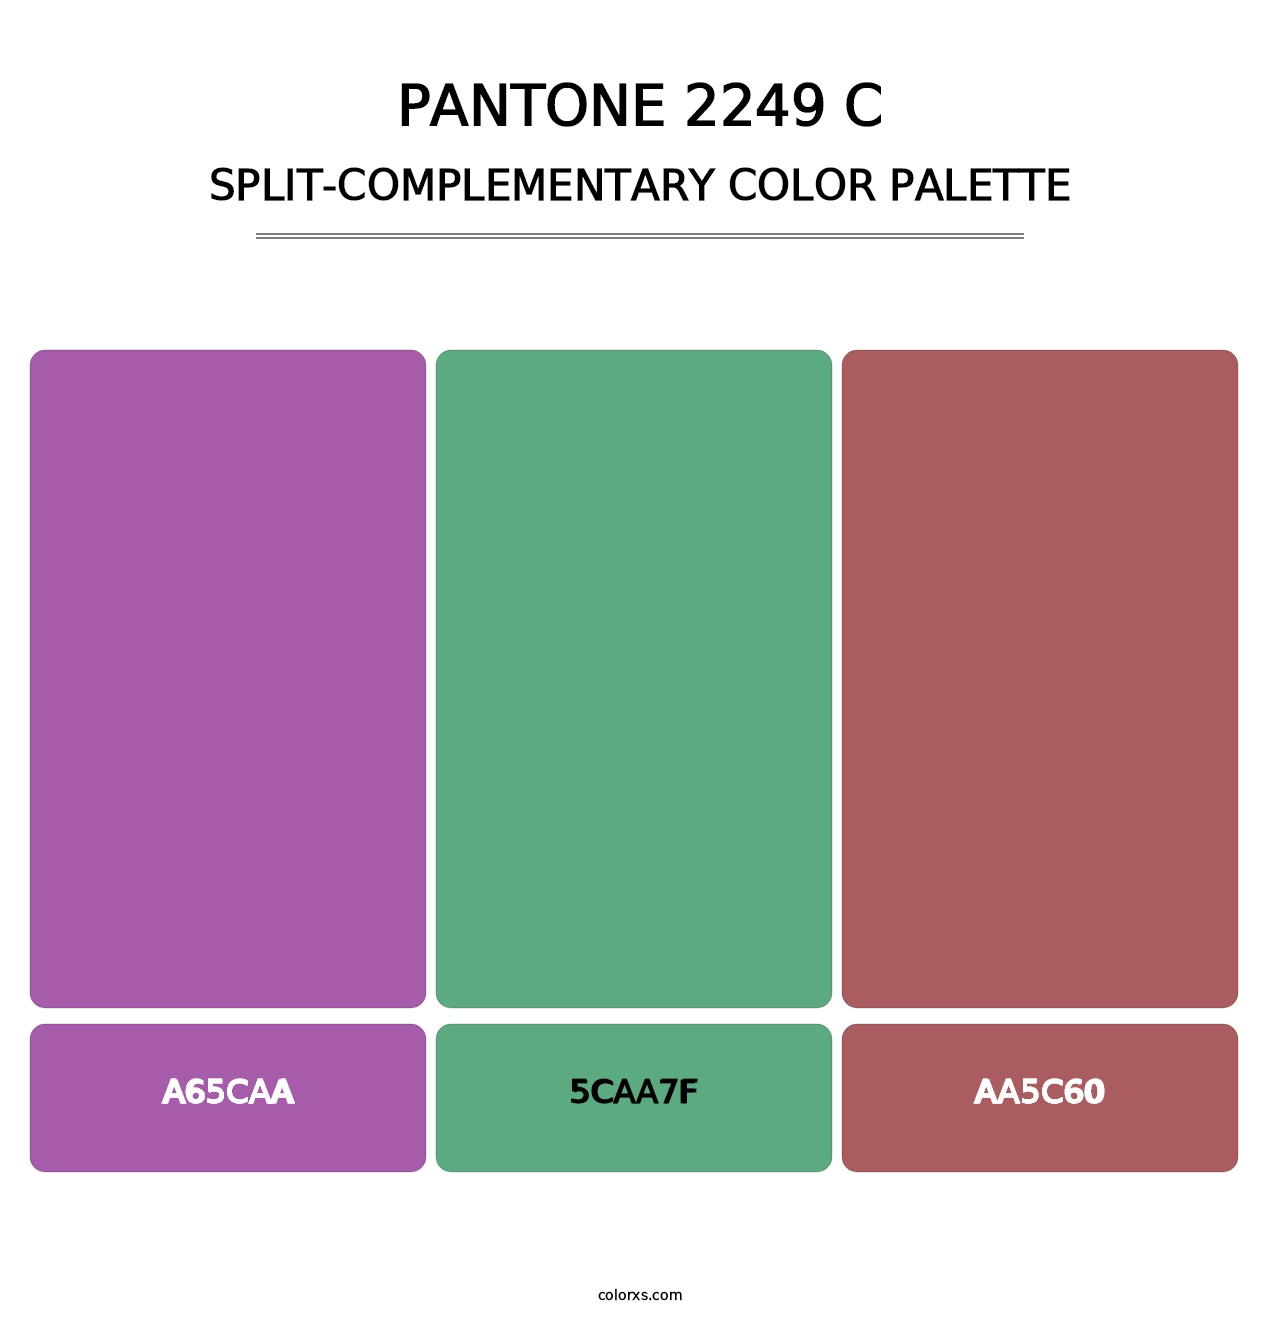 PANTONE 2249 C - Split-Complementary Color Palette